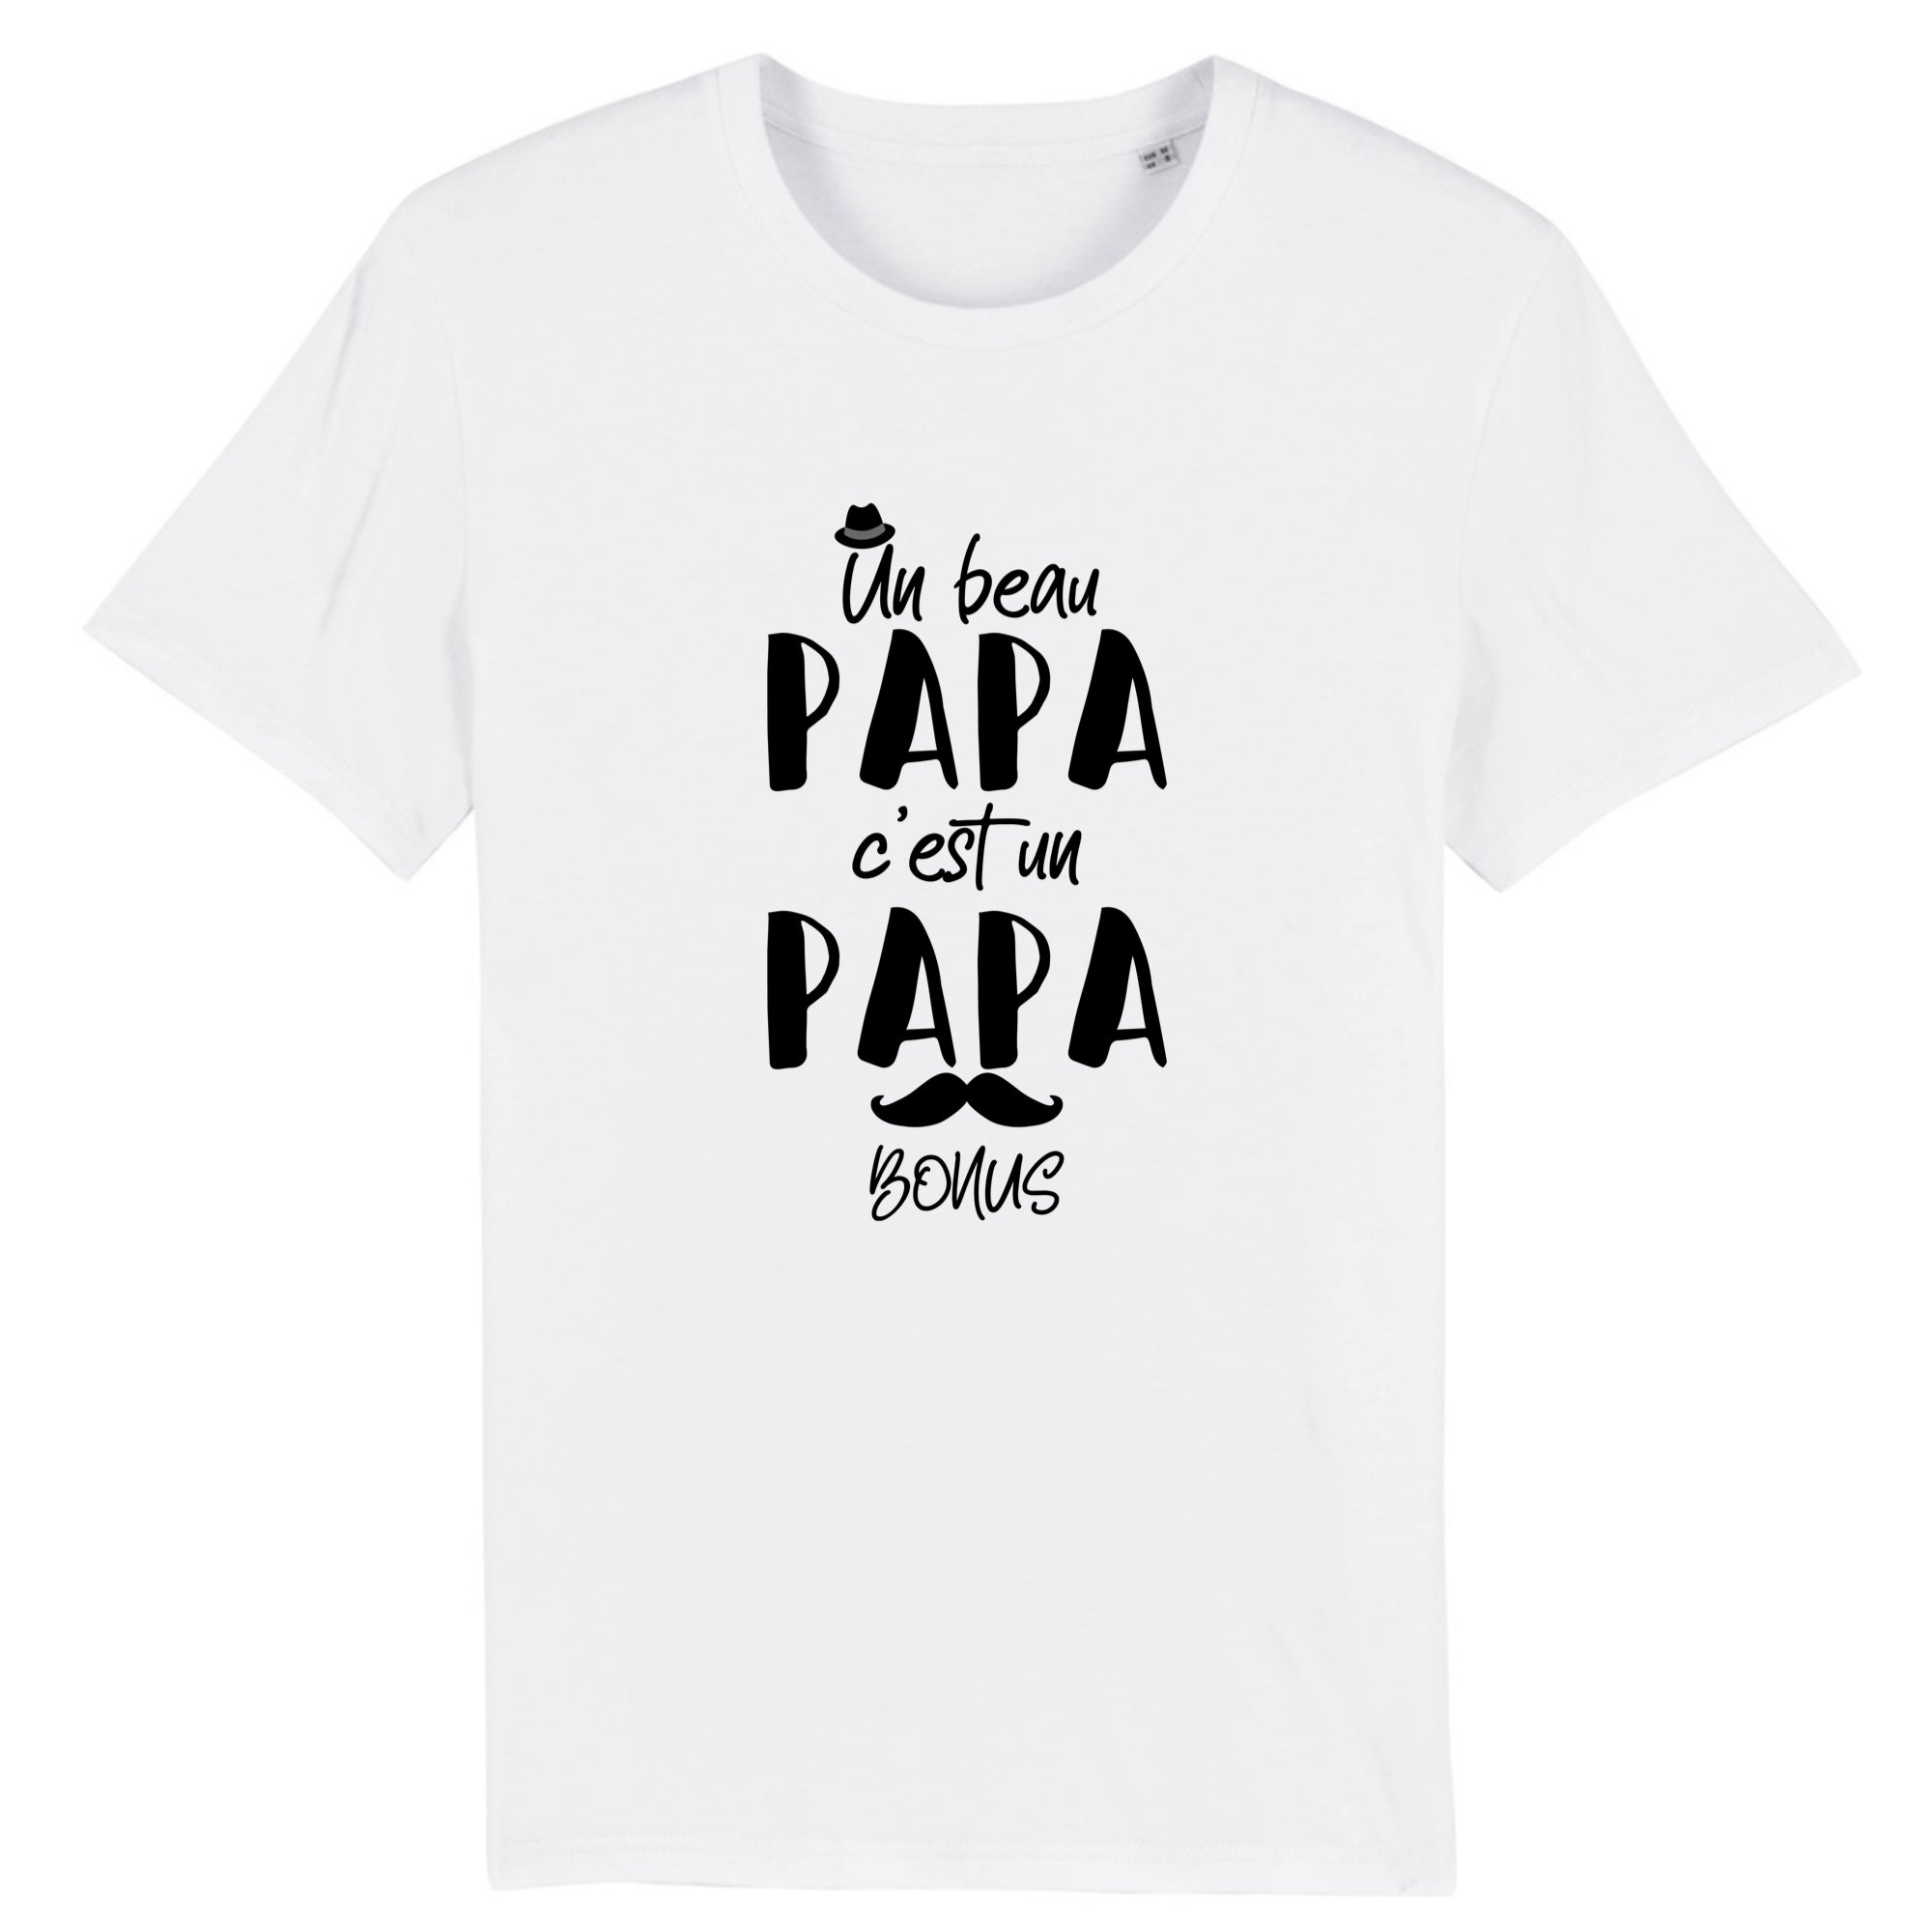 t-shirt beau-papa, papa bonus –